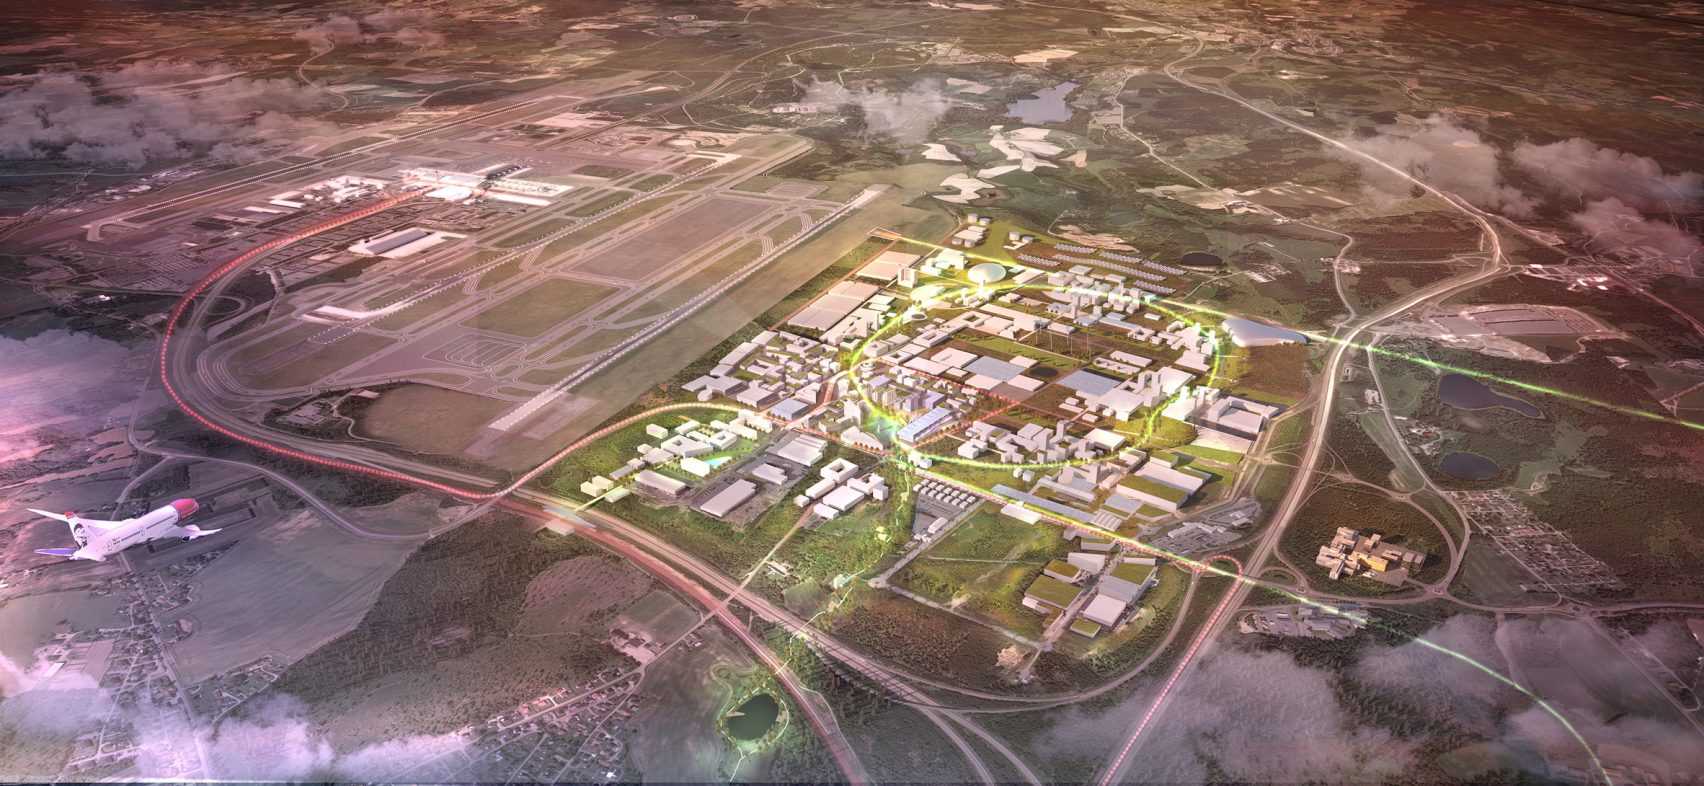  Zračna luka Oslo dobit će održiv i budući grad